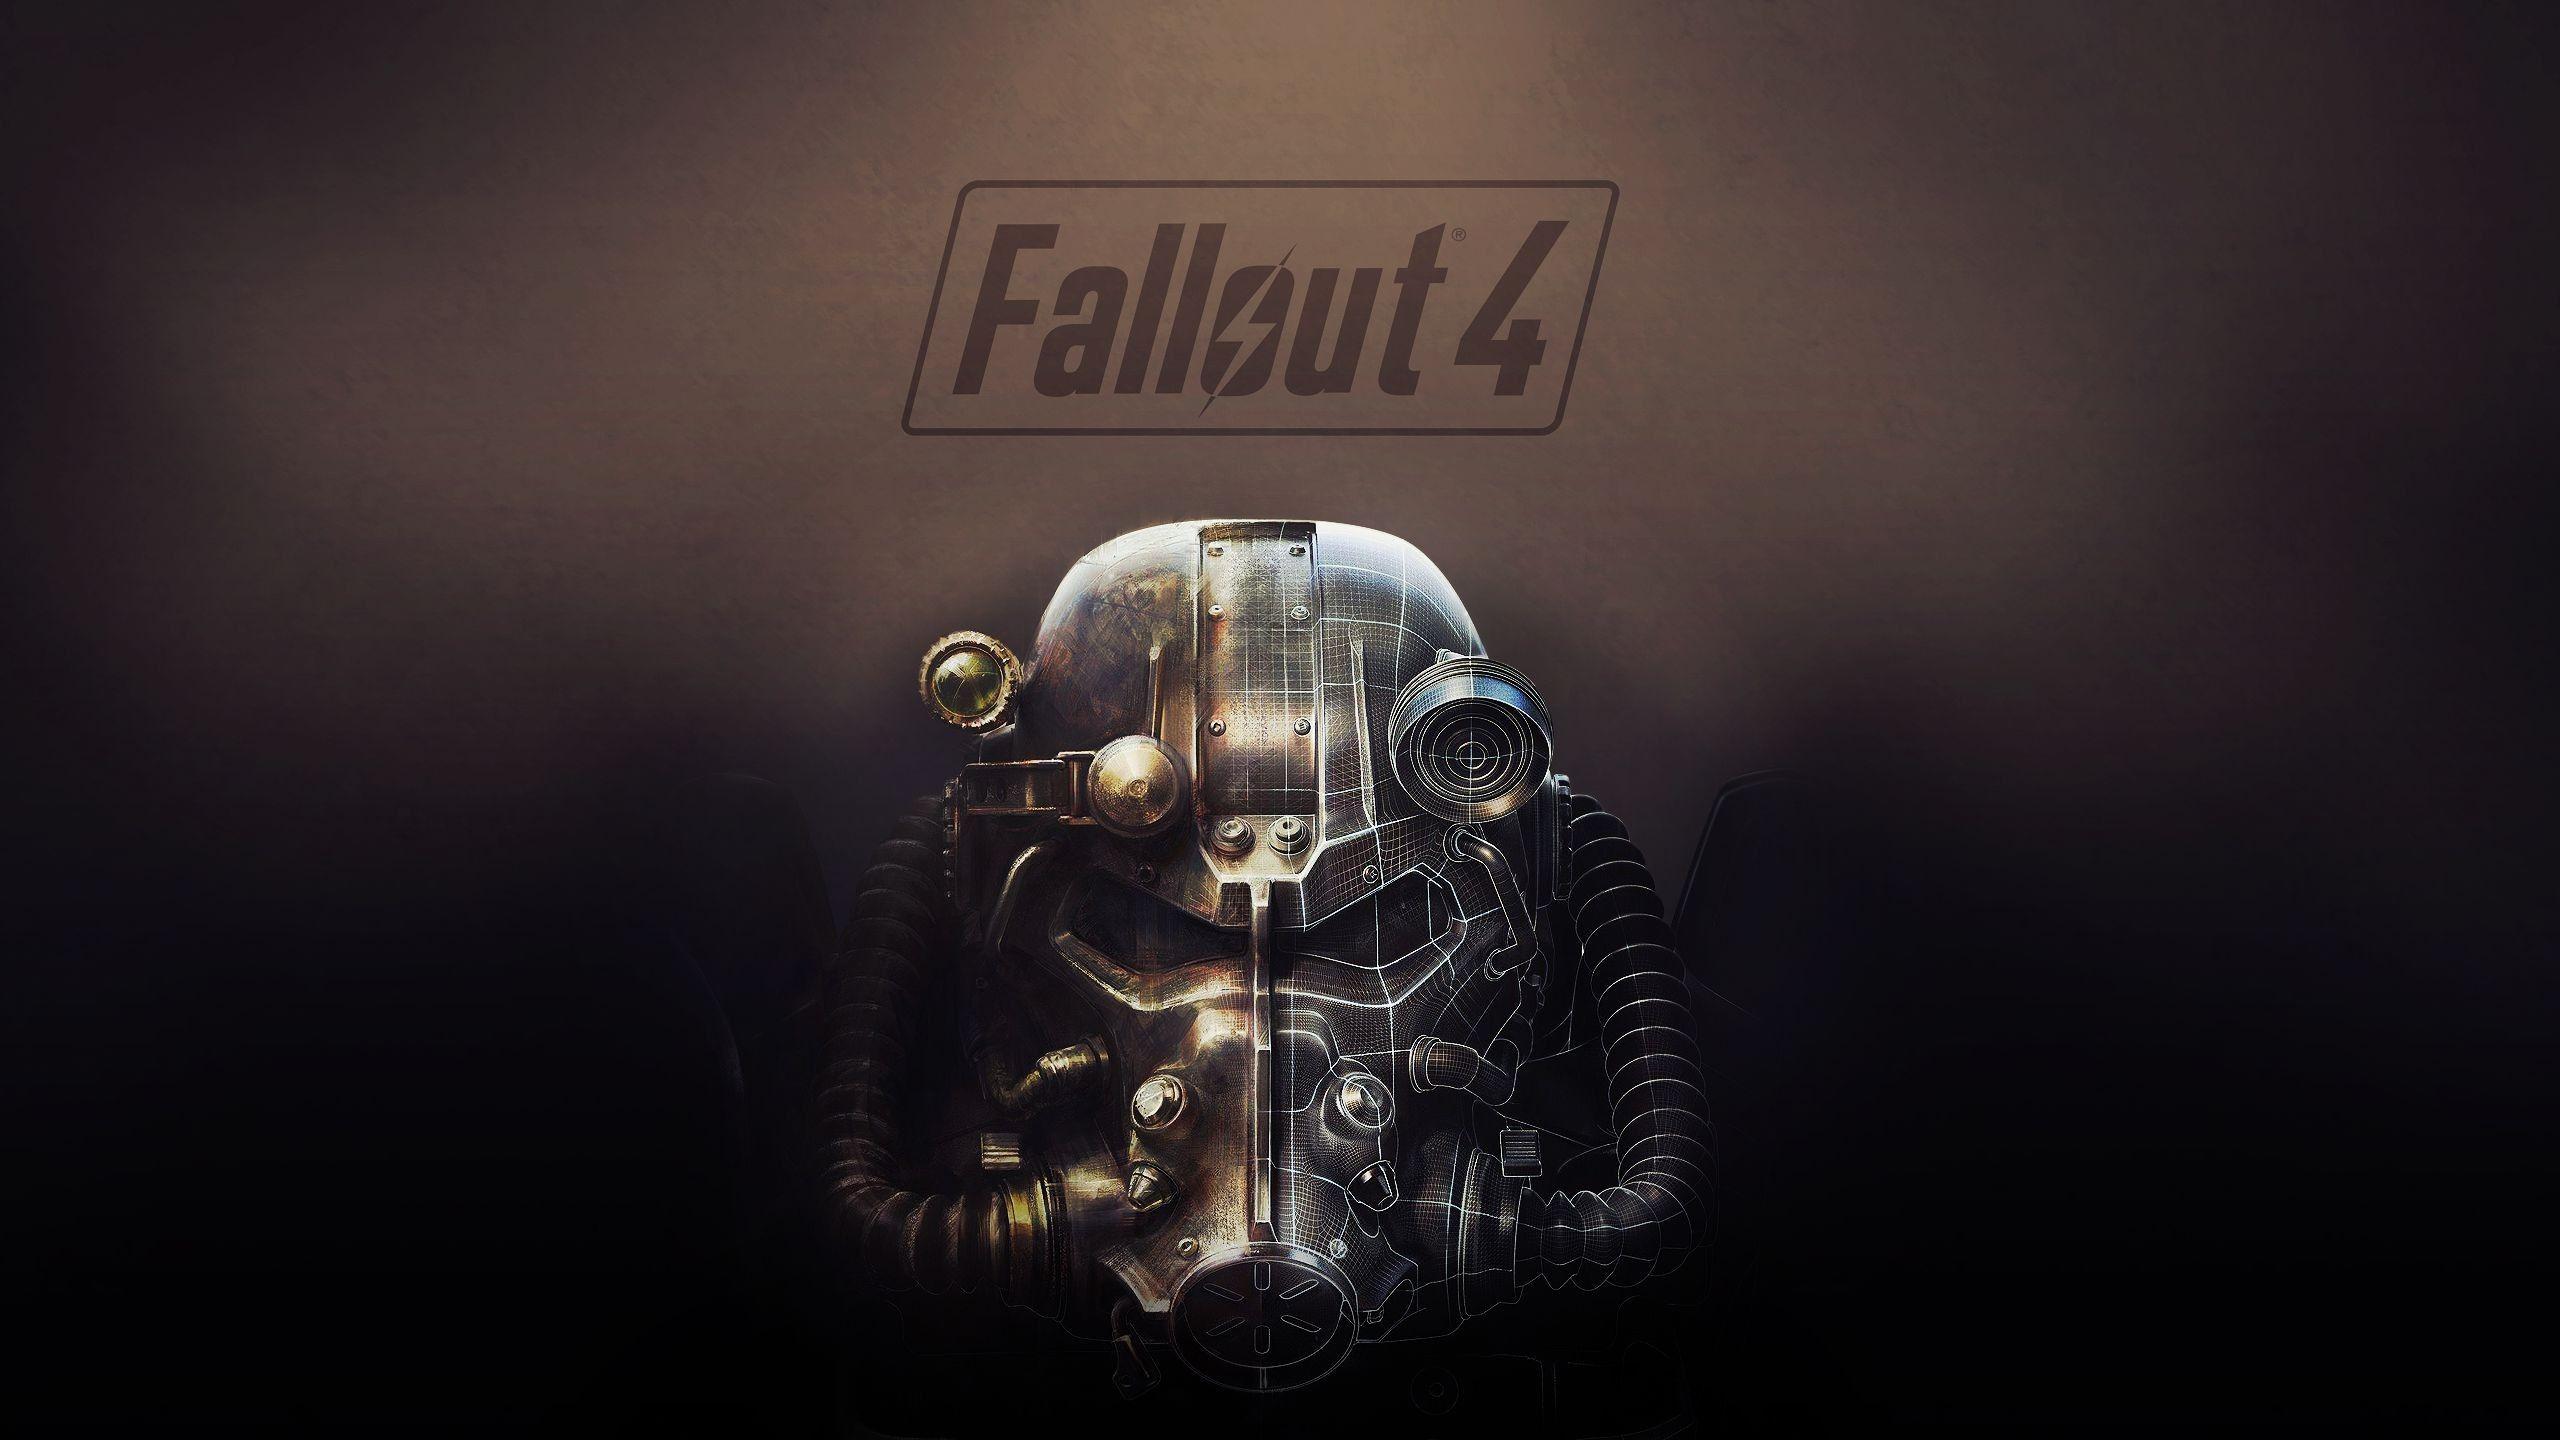 Fallout 4 Wallpaper 2560x1440